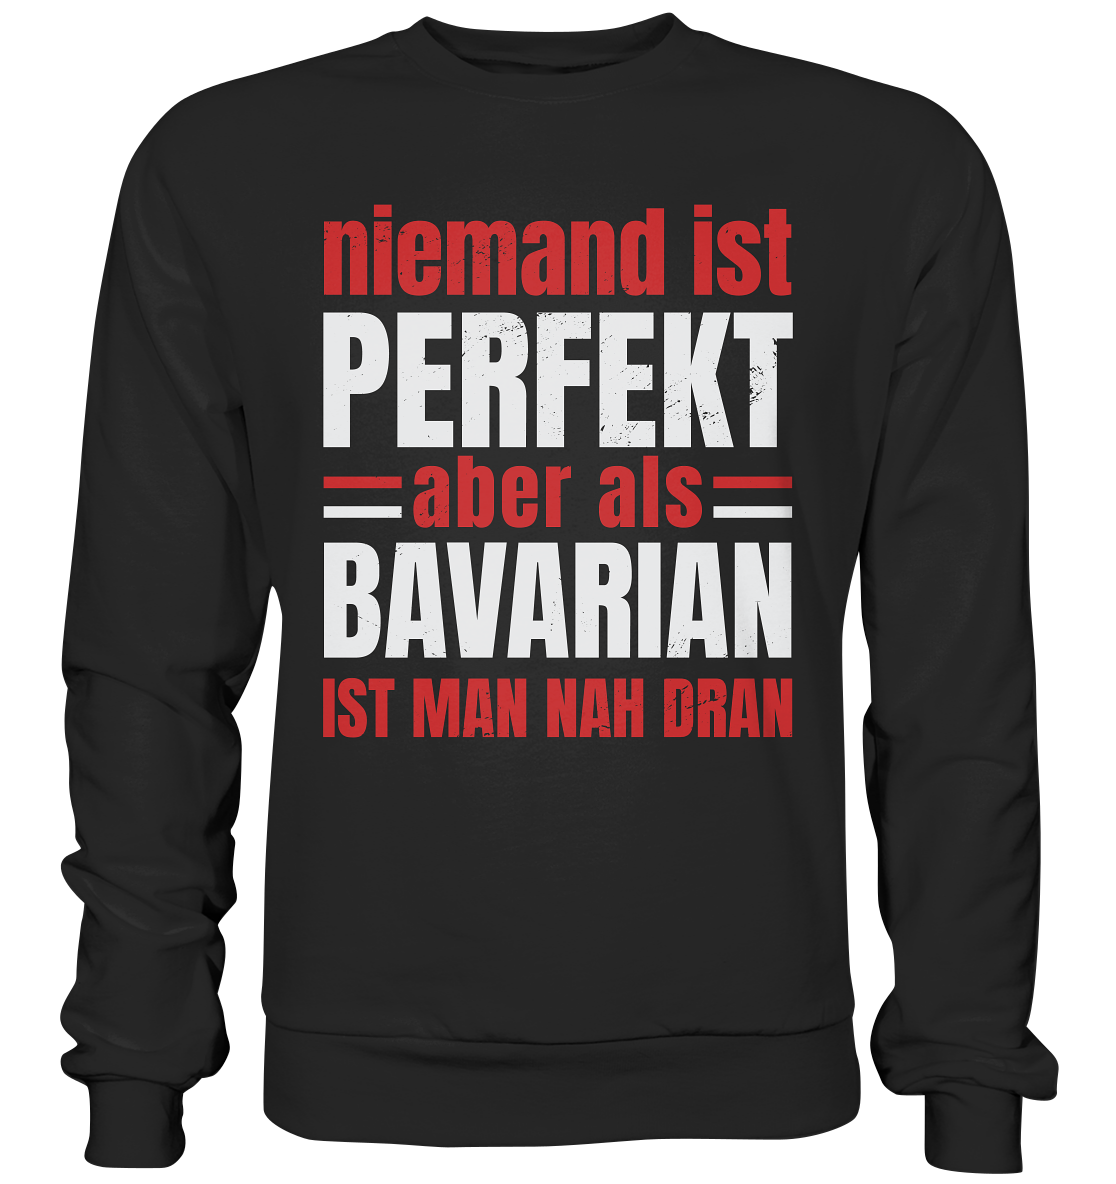 Personne n'est parfait mais en tant que Bavarois, vous en êtes proche - sweat-shirt premium